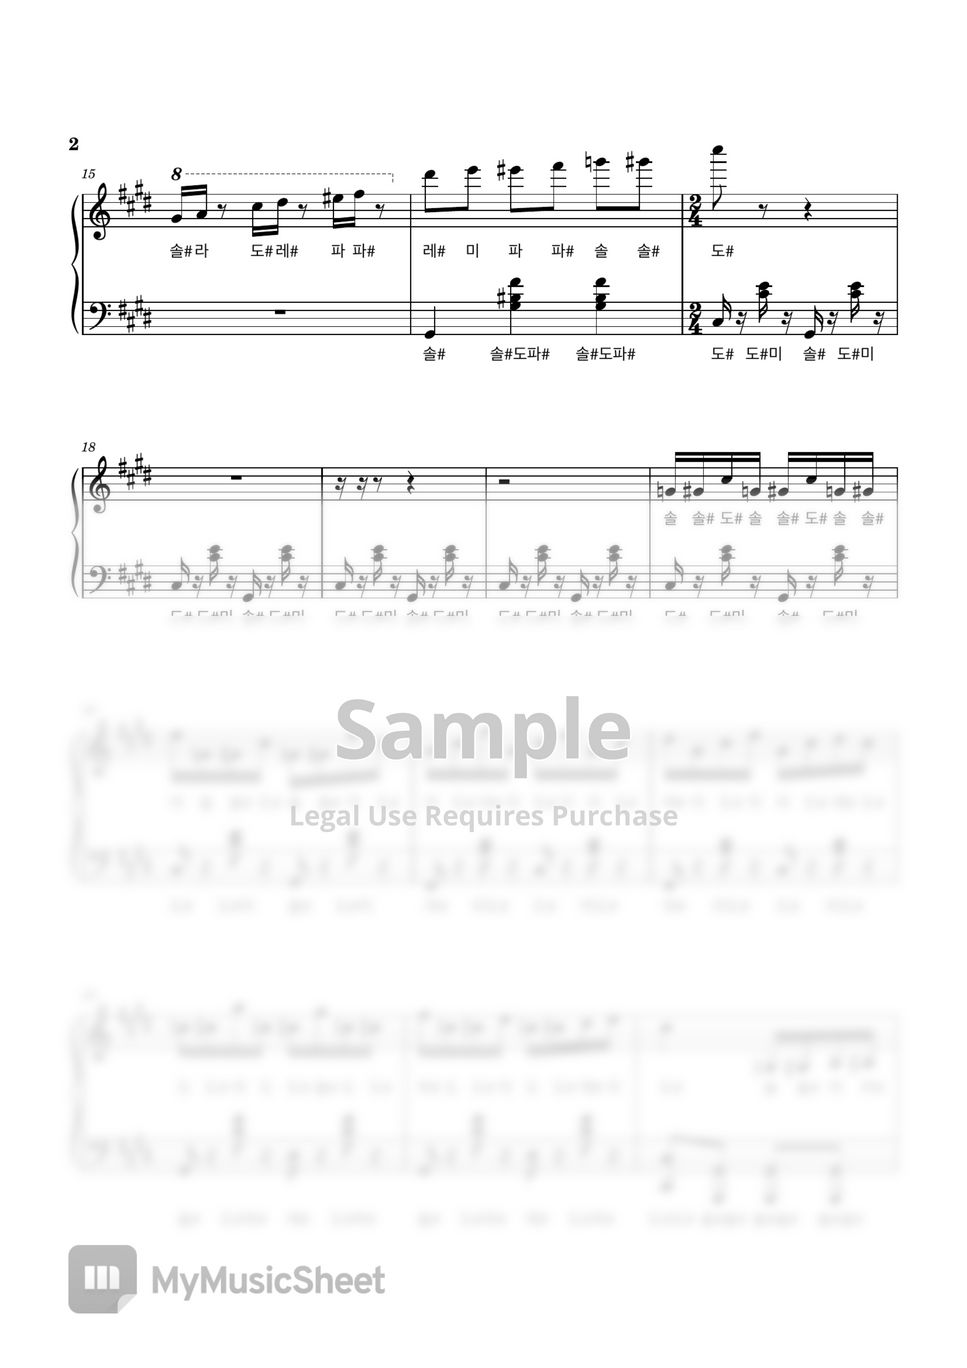 말할 수 없는 비밀 OST - 말할 수 없는 비밀 OST - 쇼팽왈츠 (계이름악보) by My Uk Piano